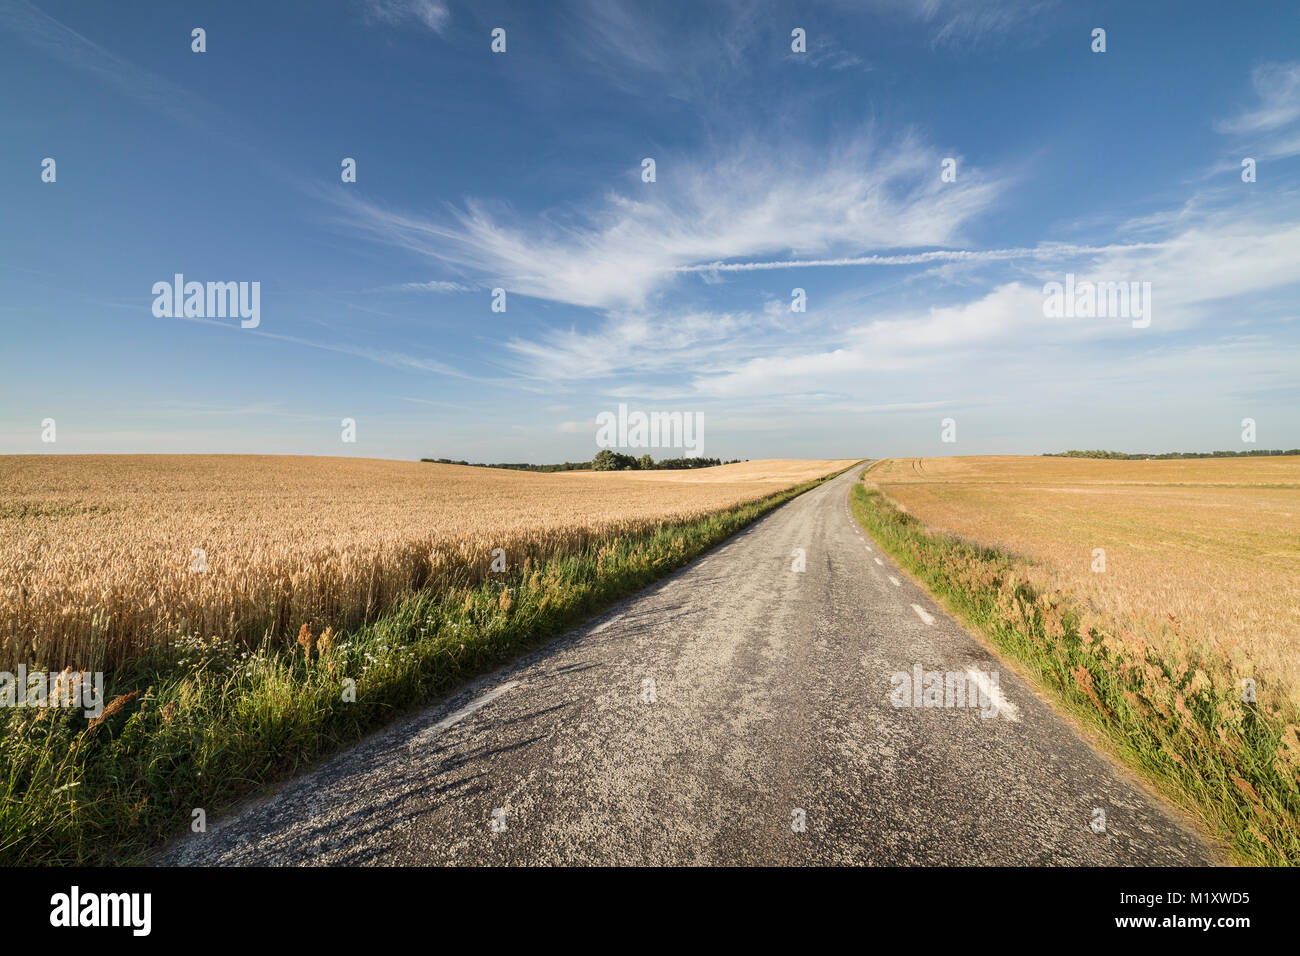 Ferme et champ de blé dans de vastes paysages. Uppsala, Suède, Scandinavie. Banque D'Images